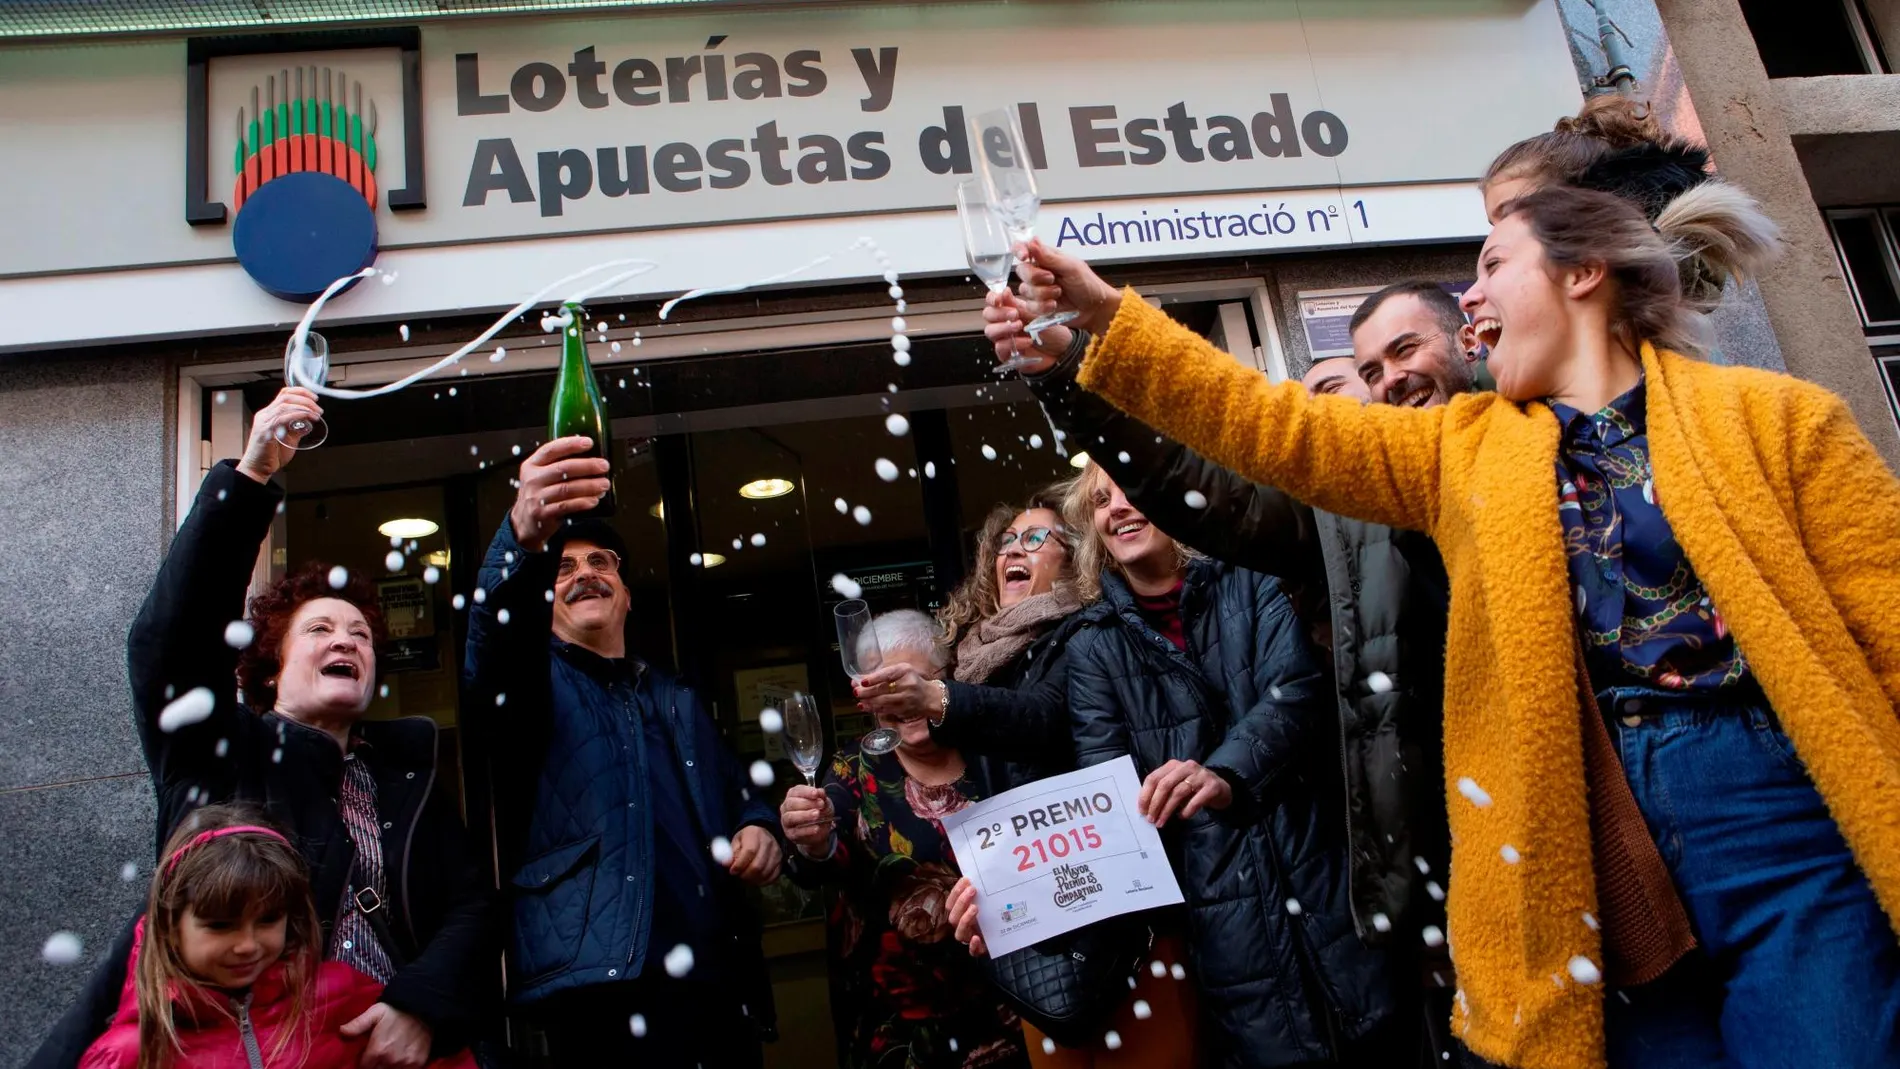 La administración de lotería número 1 de Castellbisbal (Barcelona) ha venido en ventanilla una serie del segundo premio del sorteo extraordinario de la lotería de Navidad.